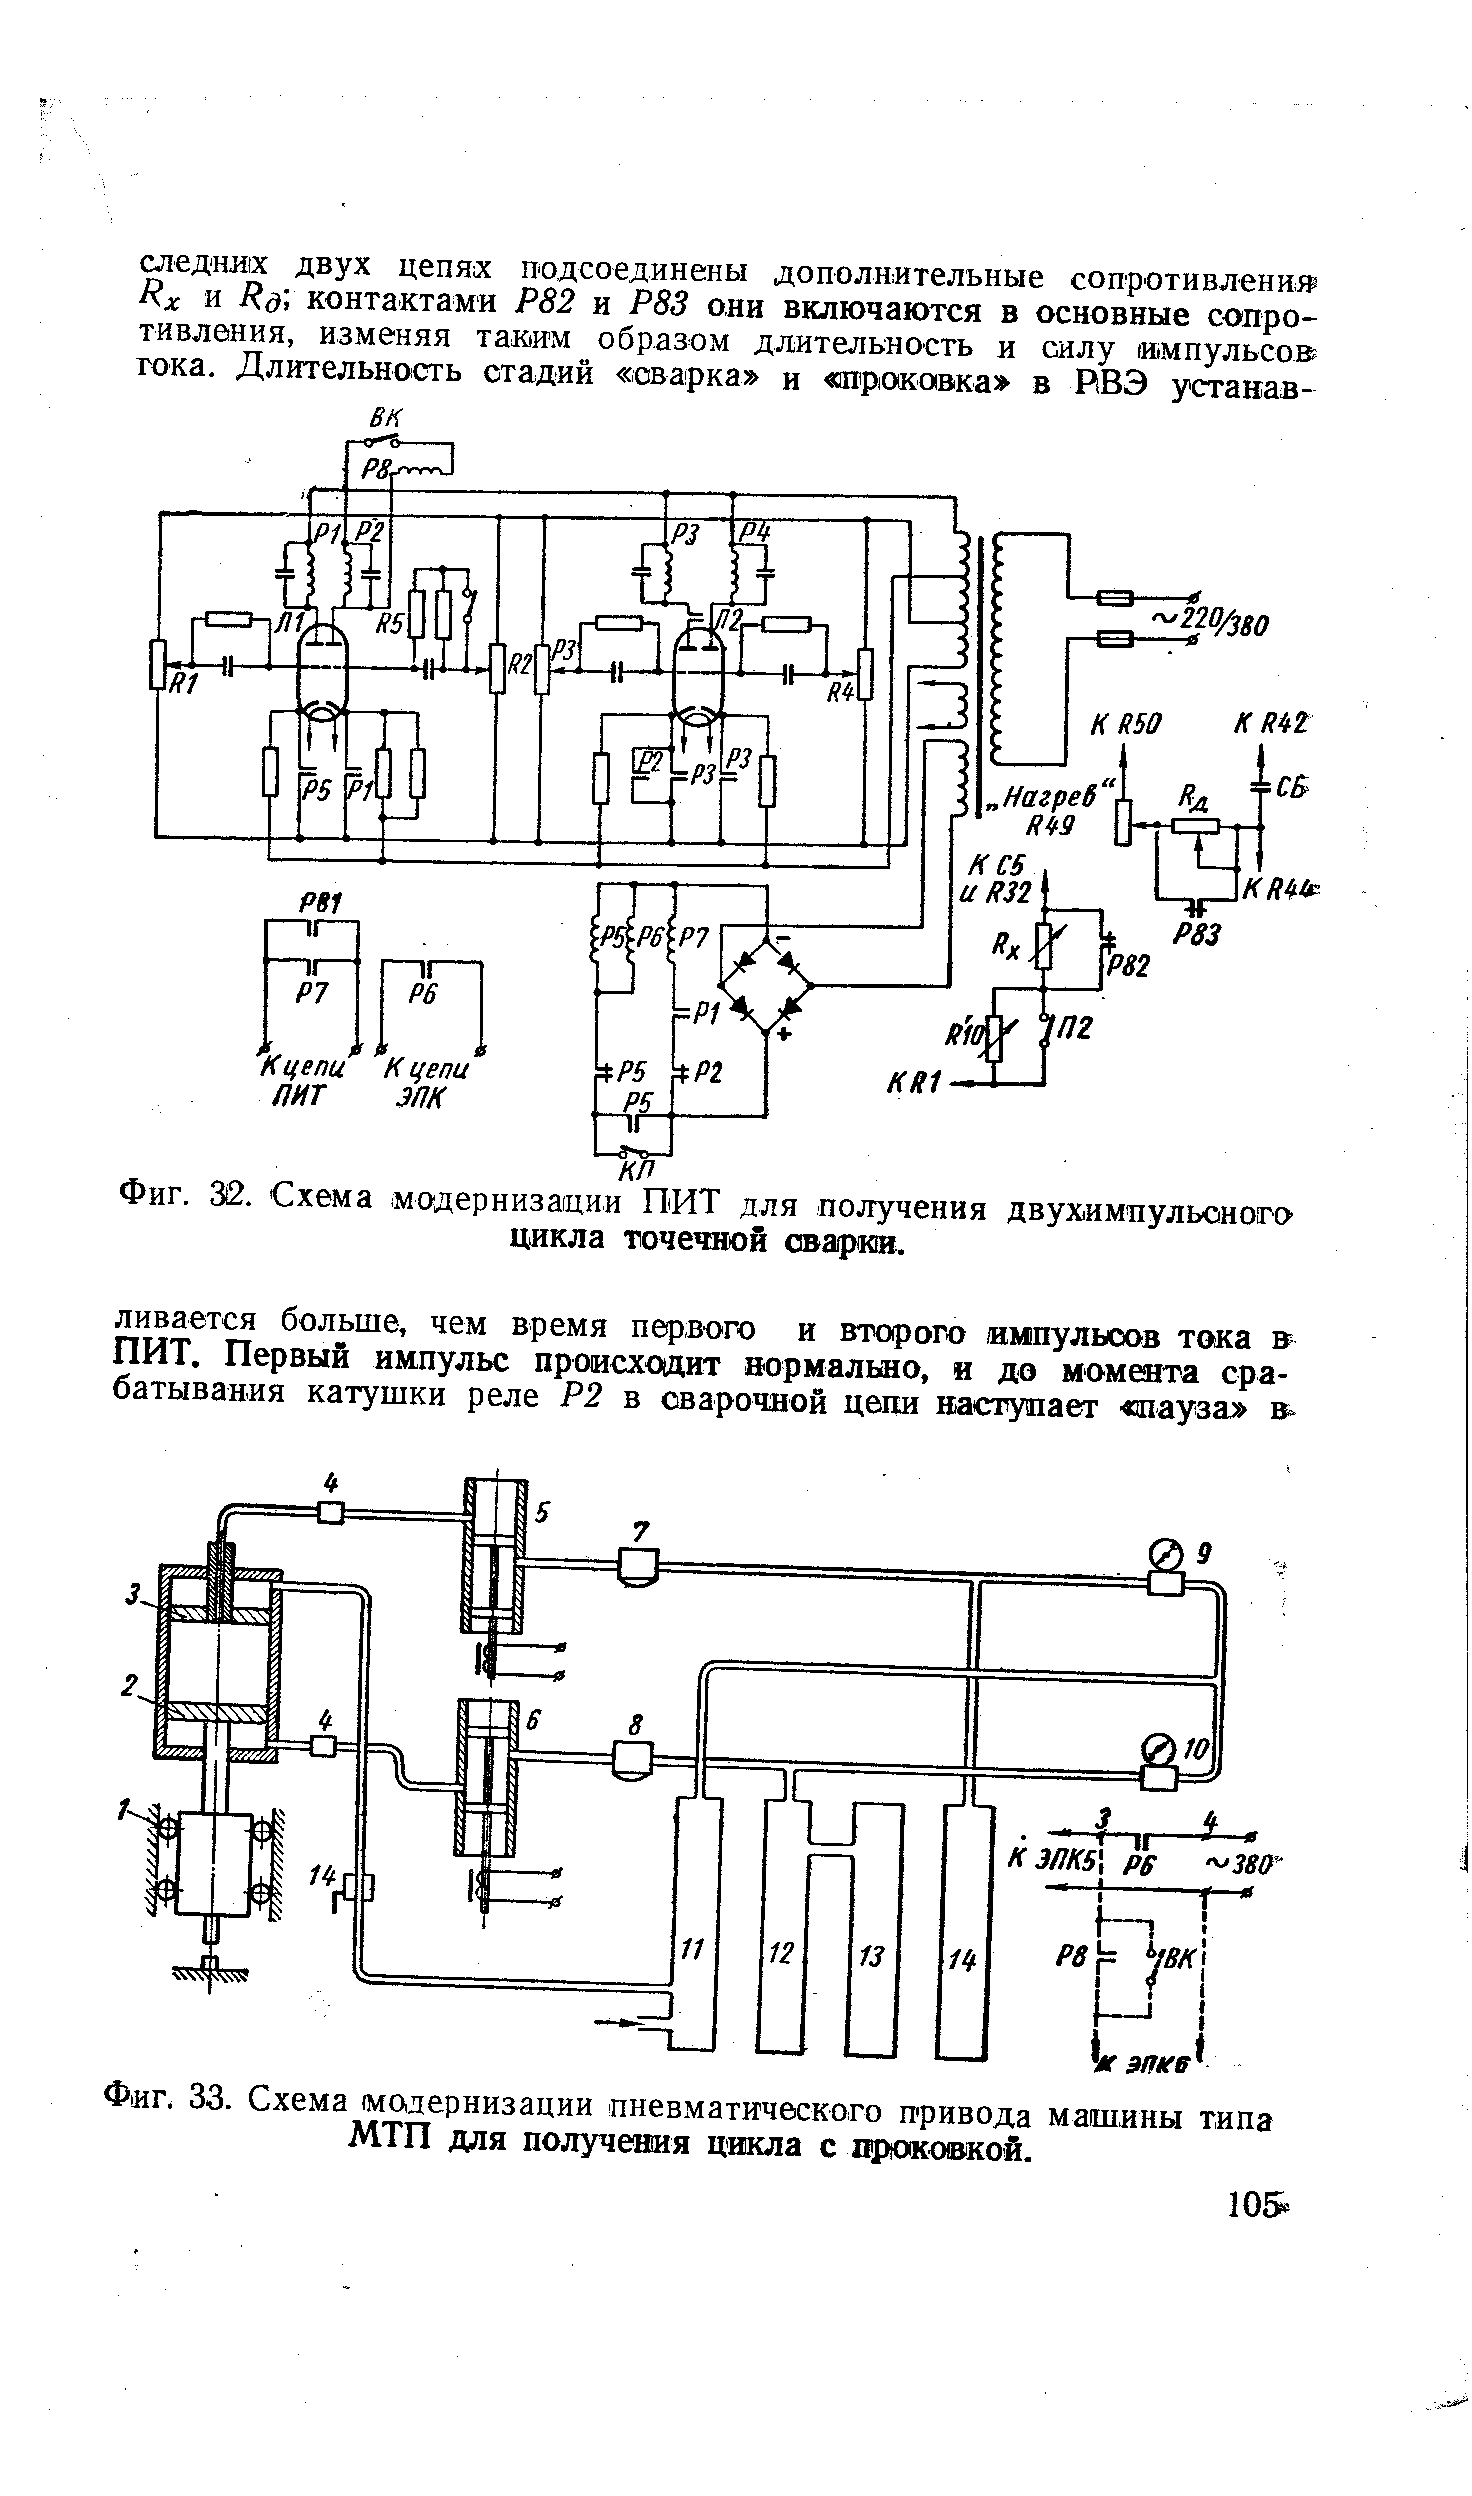 Фиг. 33. Схема модернизации пневматического привода машины типа МТП для получения цикла с проковкой.
